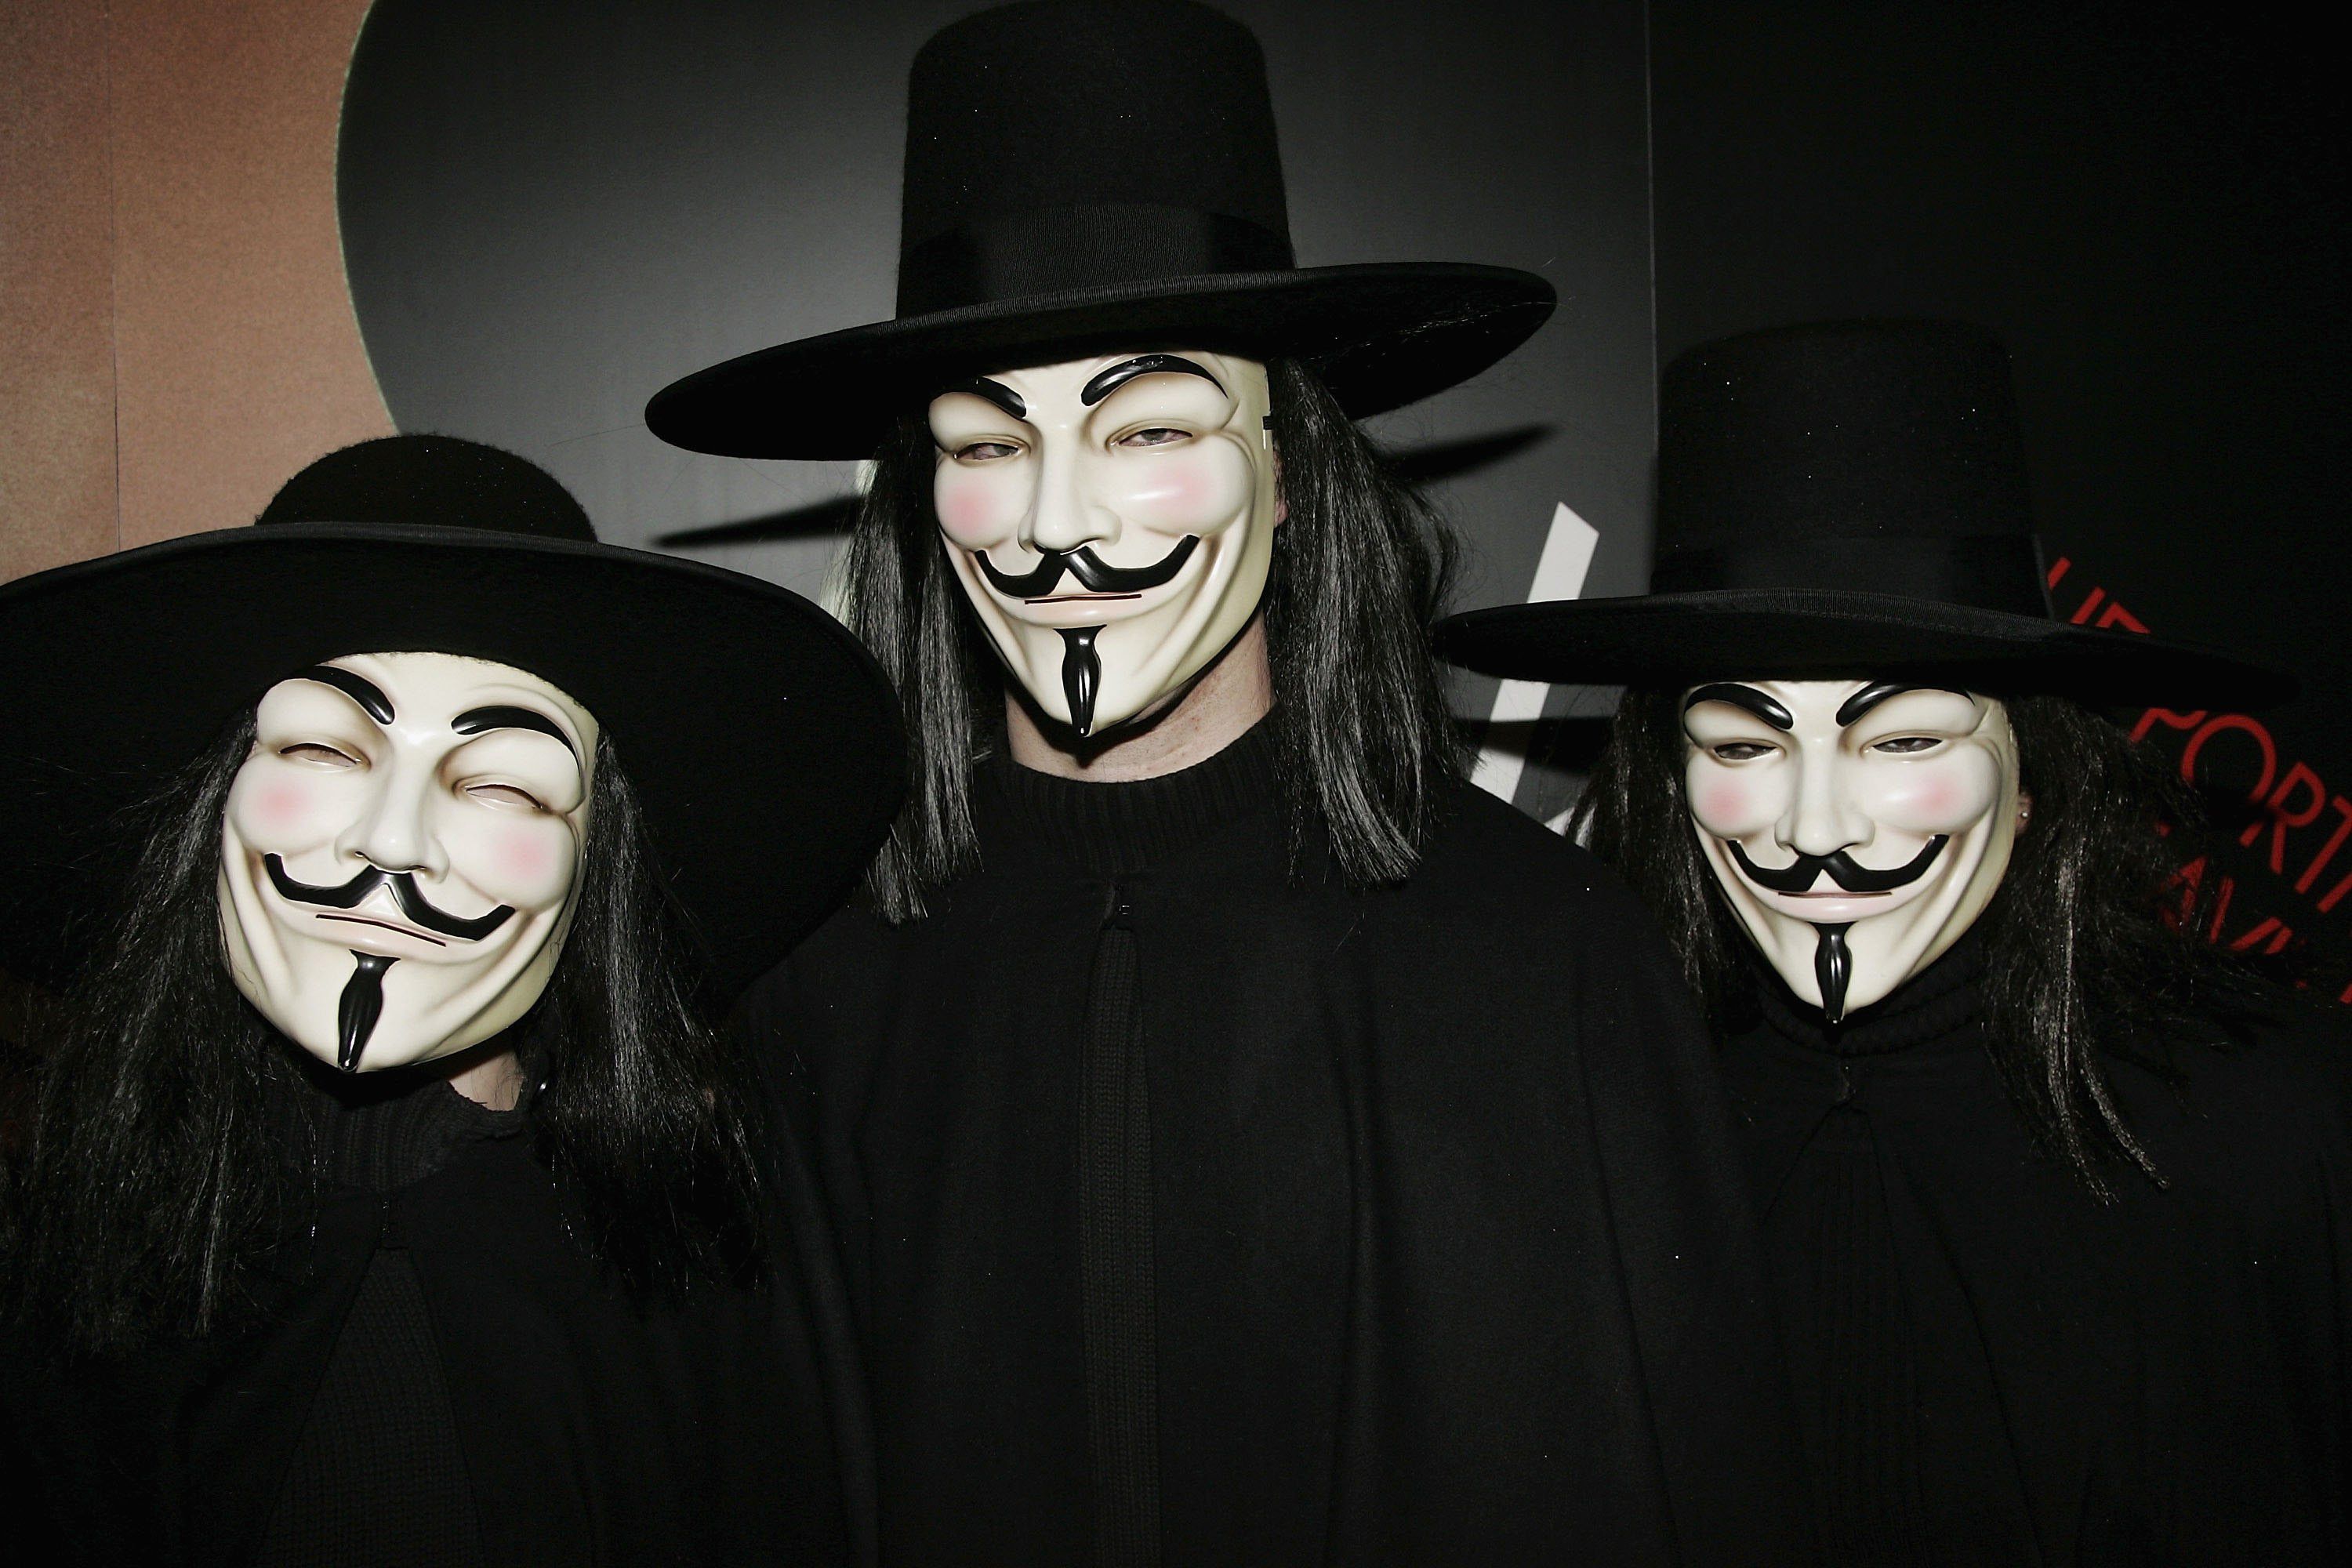 Ekstremt vigtigt Hensigt Stå sammen V for Vendetta Author Finds Use of Guy Fawkes Masks 'Peculiar'